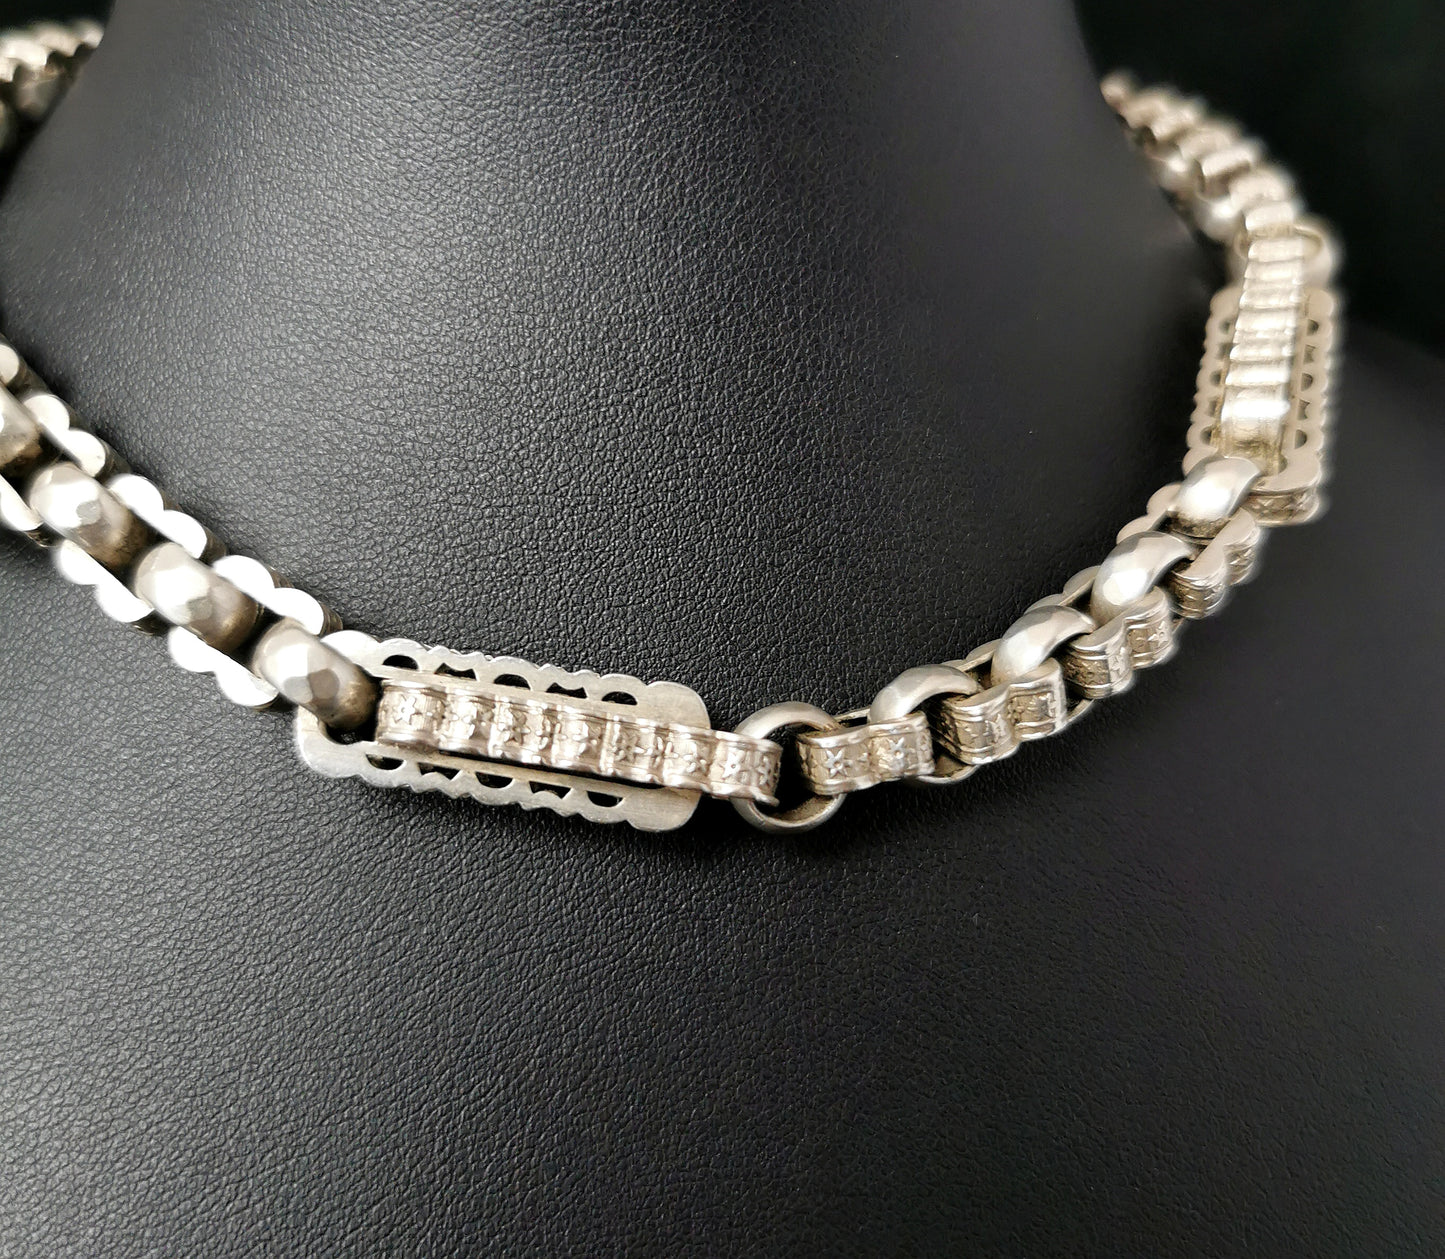 Antique silver Albert chain, fancy link, watch chain, Victorian